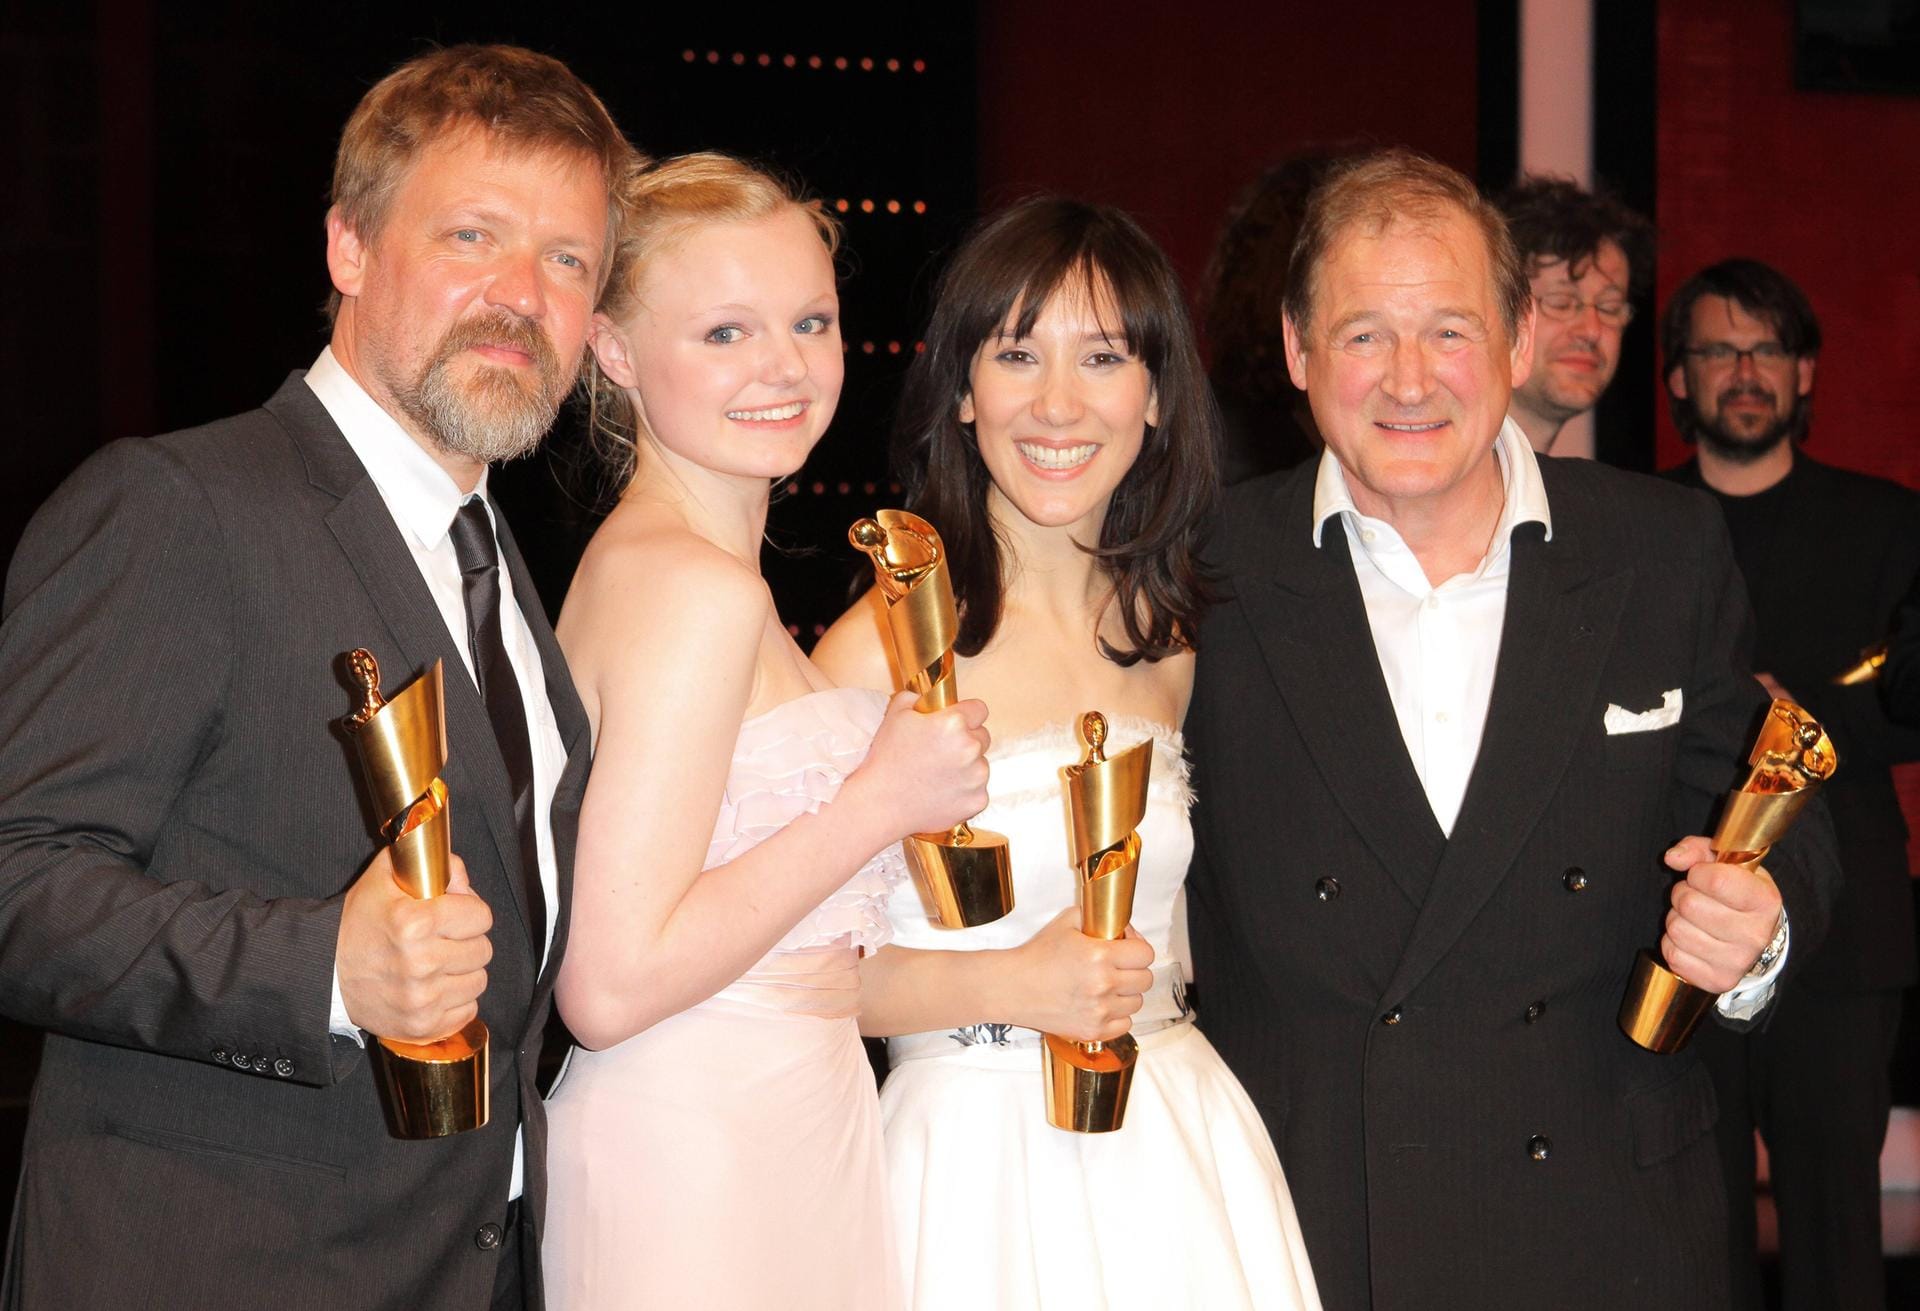 2010: Der Deutsche Filmpreis mit den Preisträgern v.l. Justus von Dohnanyi, Maria Victoria Dragus, Sibel Kekilli und Burghart Klaussner im Friedrichstadtpalast Berlin. Für ihre Rolle in "Die Fremde" erhielt Kekili insgesamt fünf Auszeichnungen.